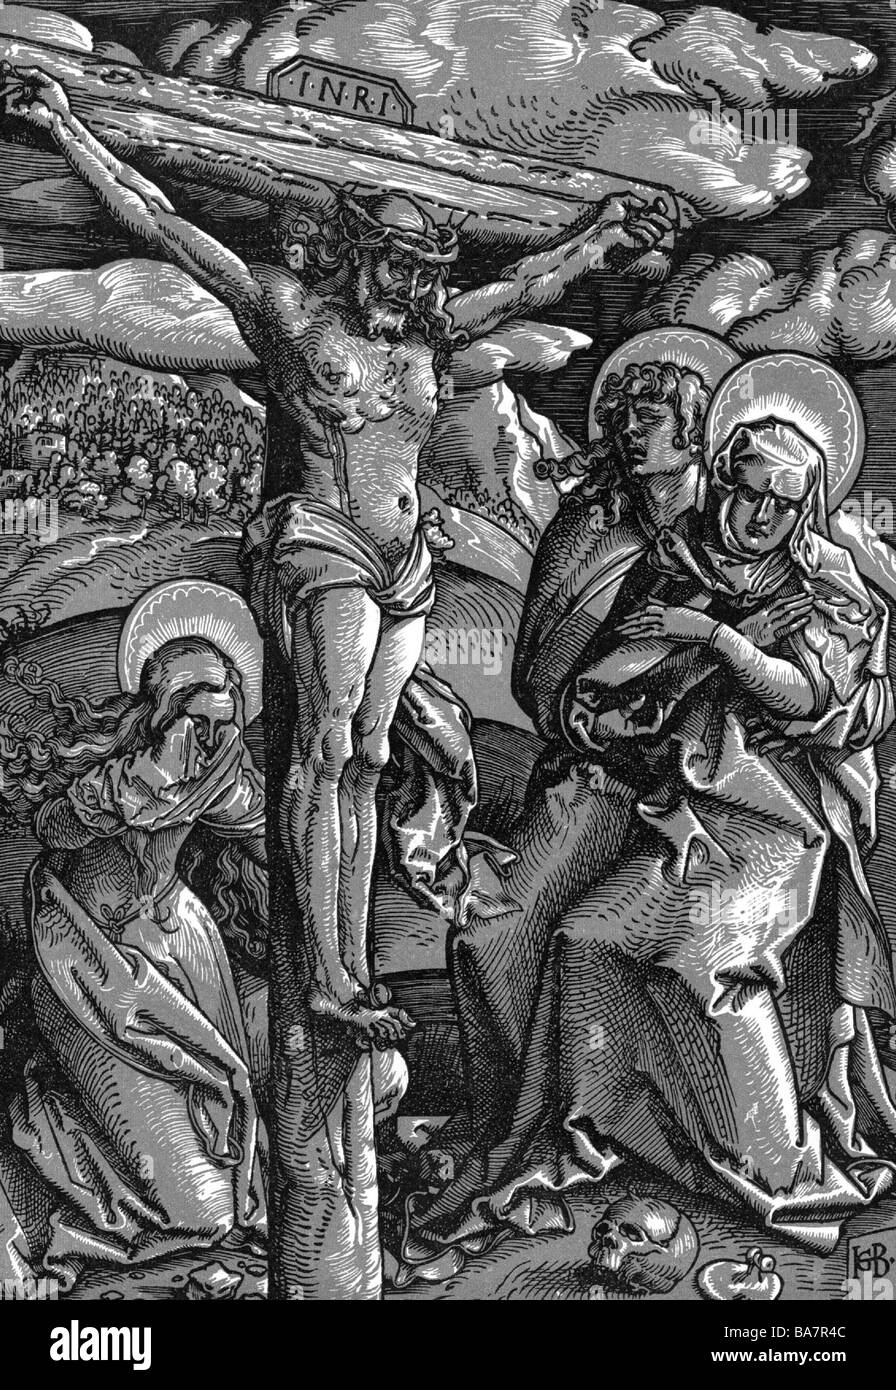 Gesù Cristo, circa 4 a.C. - circa 33 a.C., crocifiction, "Cristo sulla Croce", intagliato da Hans Baldung Grien, (circa 1480 - 1545), a lunghezza intera, Foto Stock